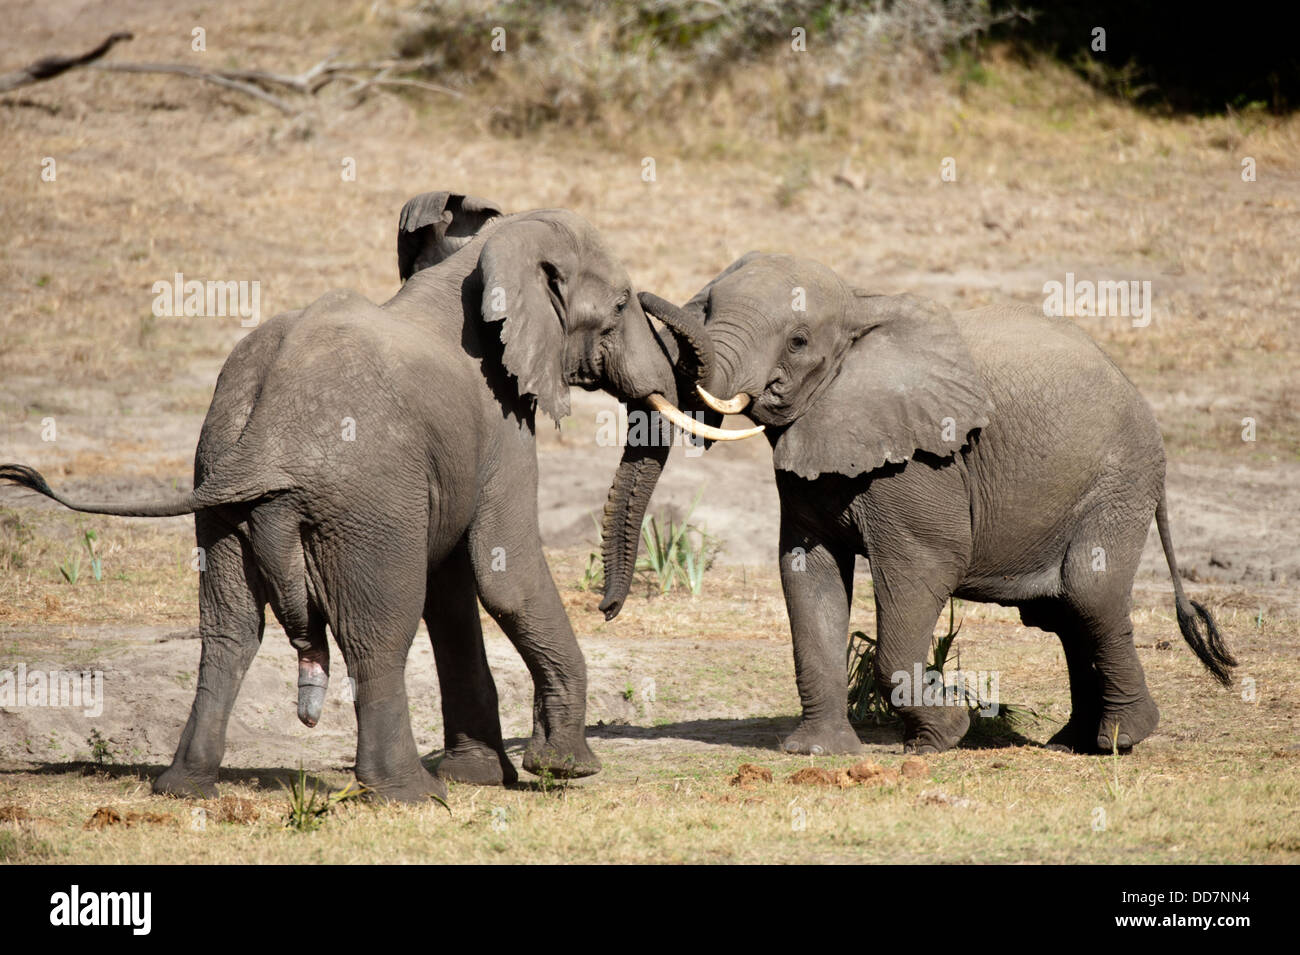 Les jeunes éléphants d'Afrique Loxodonta africana africana lecture (), Tembe Elephant Park, Afrique du Sud Banque D'Images